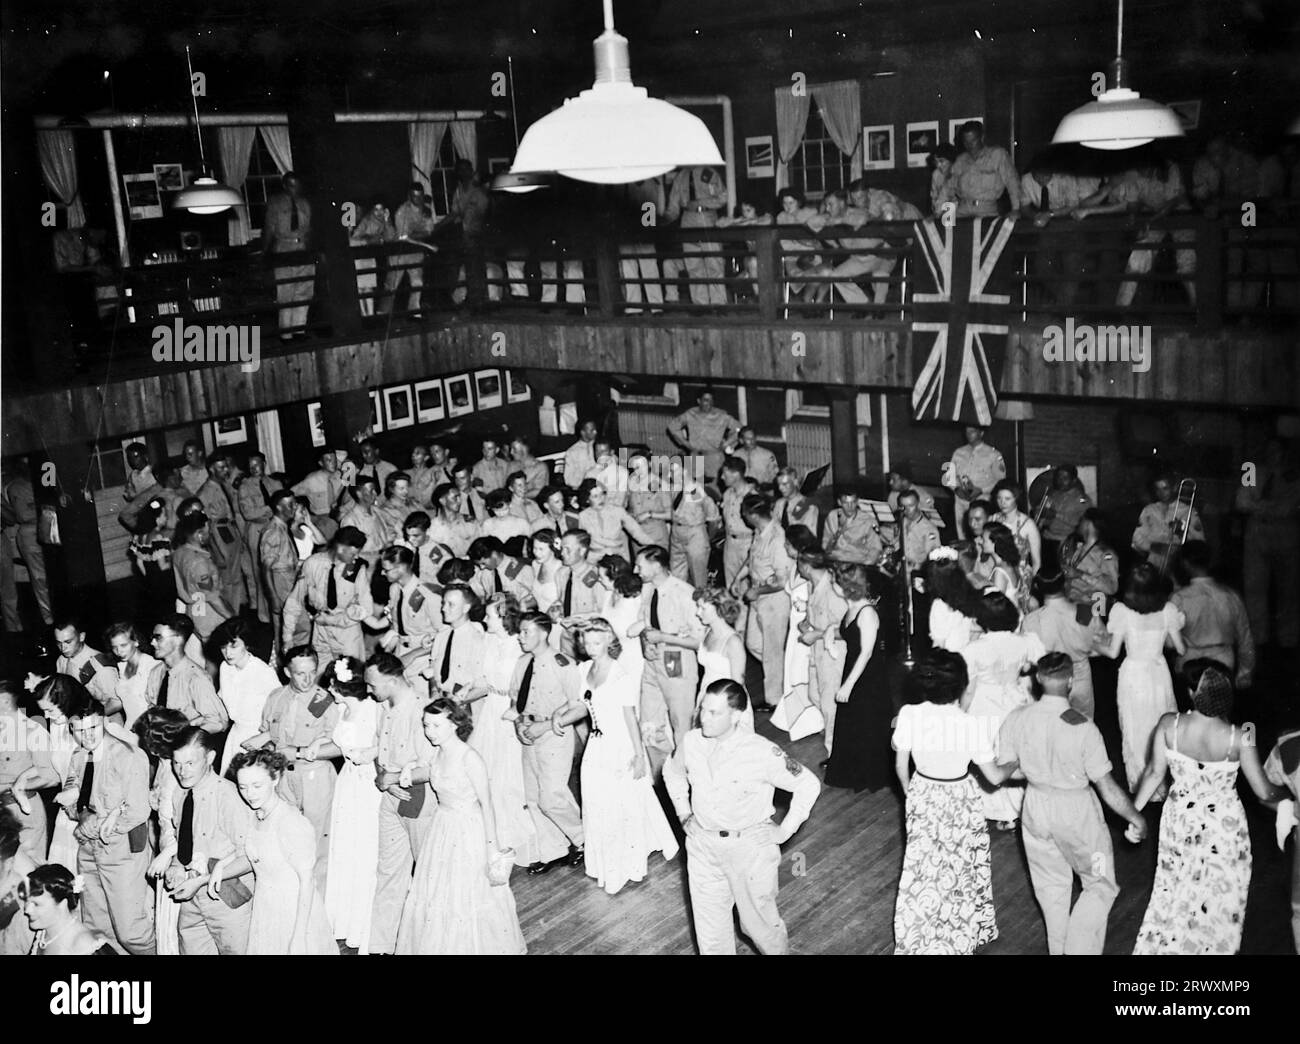 North Carolina: The Service Club Dance. Seltenes Foto: Aus einer Sammlung eines unbekannten britischen Soldaten über die No. 1 Composite Demonstration, AA Battery, Tour durch die USA, vom 11. Juli 1943. Dies ist eines von mehr als hundert Bildern in der Sammlung, die im Durchschnitt etwa 4 x 3 Zoll groß waren. Stockfoto